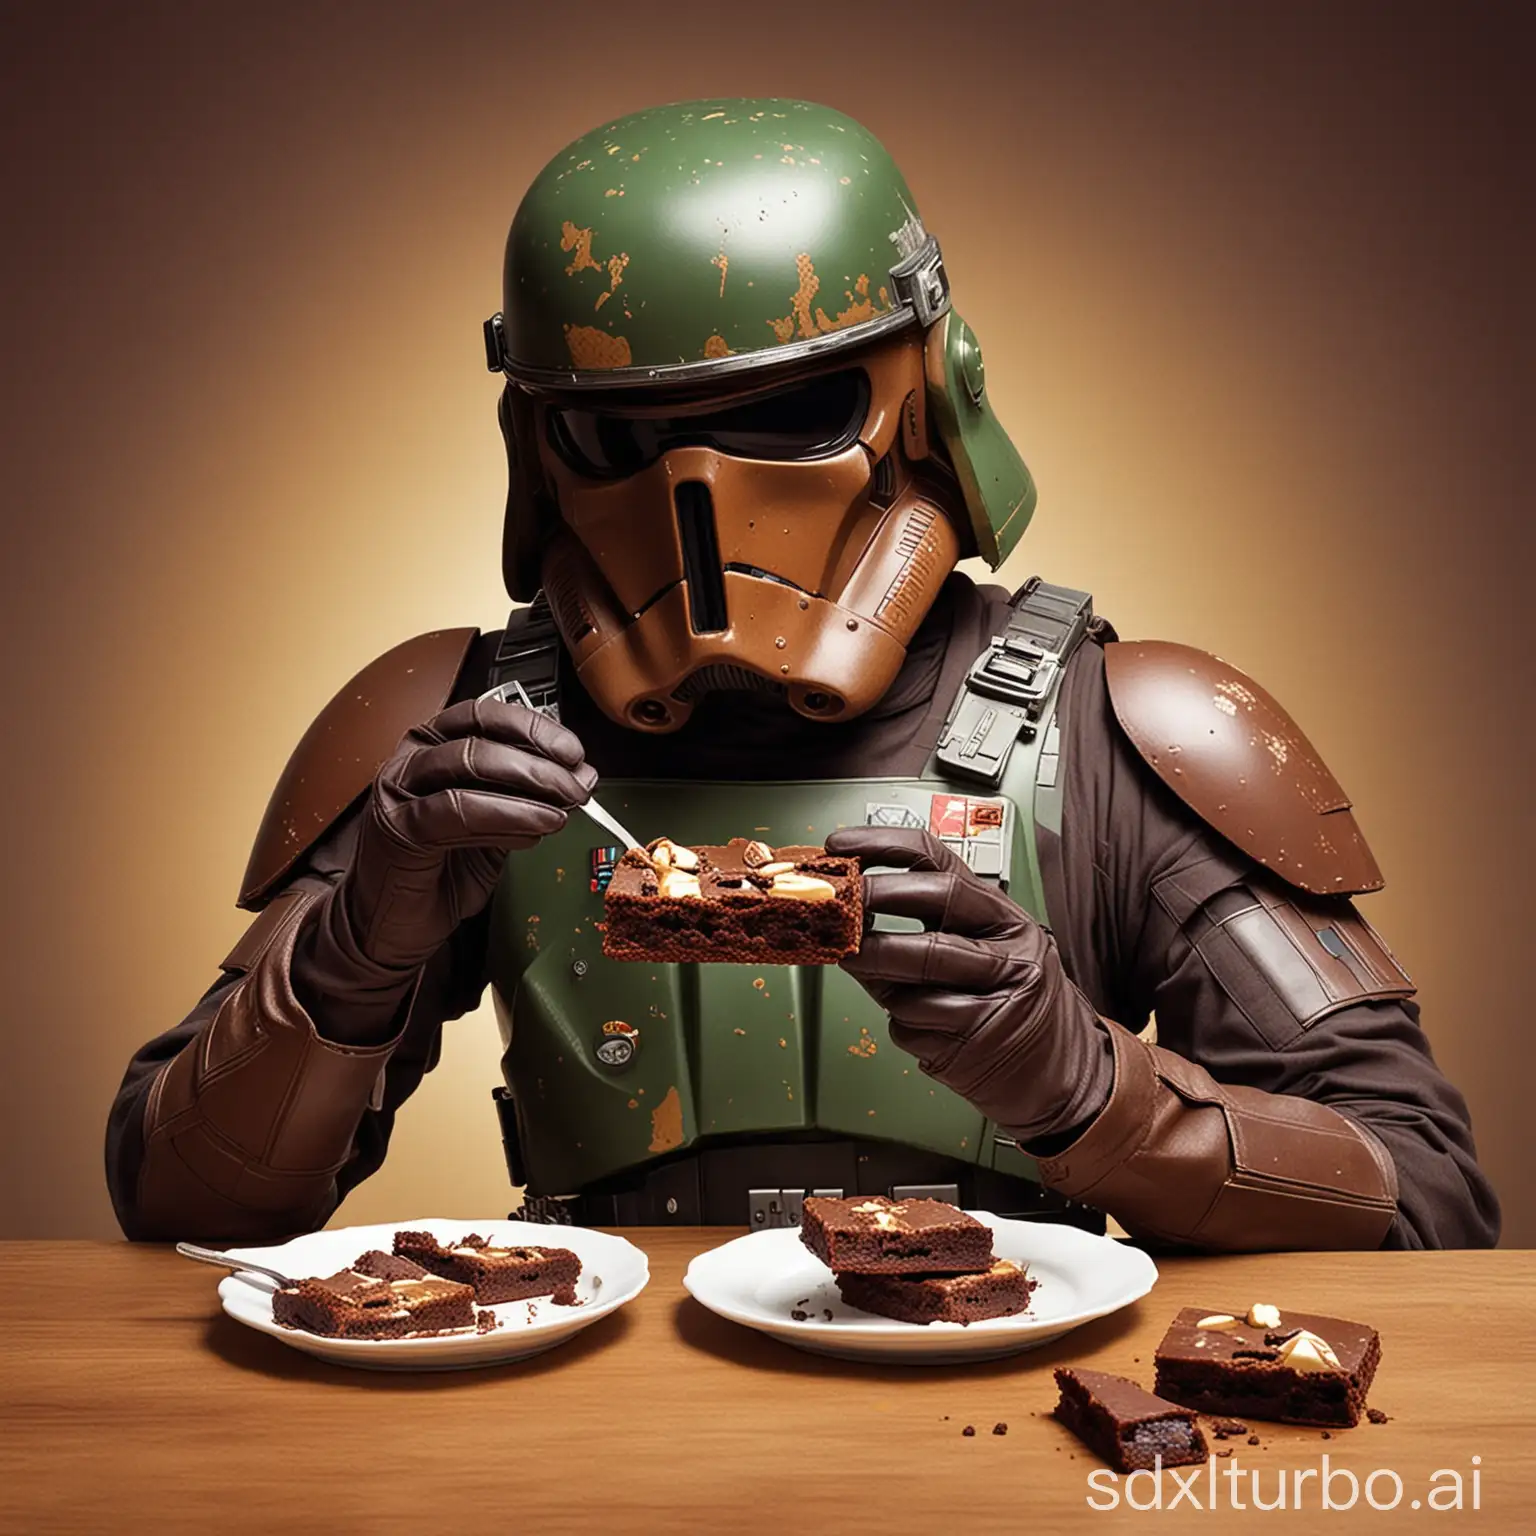 soldado de star wars comiendo brownies
